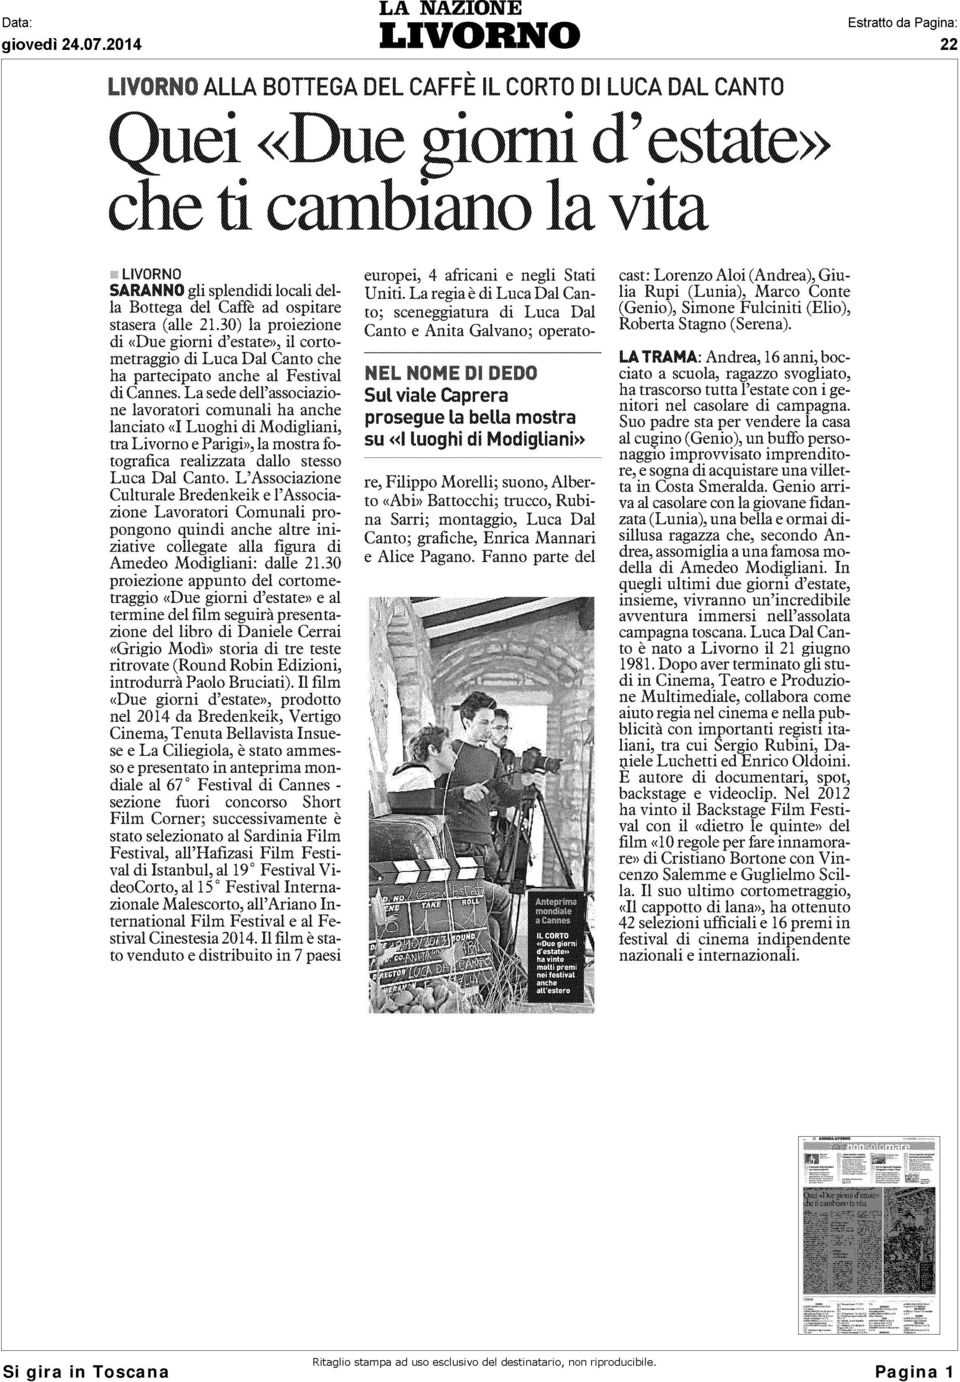 La sede dell'associazione lavoratori comunali ha anche lanciato «I Luoghi di Modigliani, tra Livorno e Parigi», la mostra fotografica realizzata dallo stesso Luca Dal Canto.